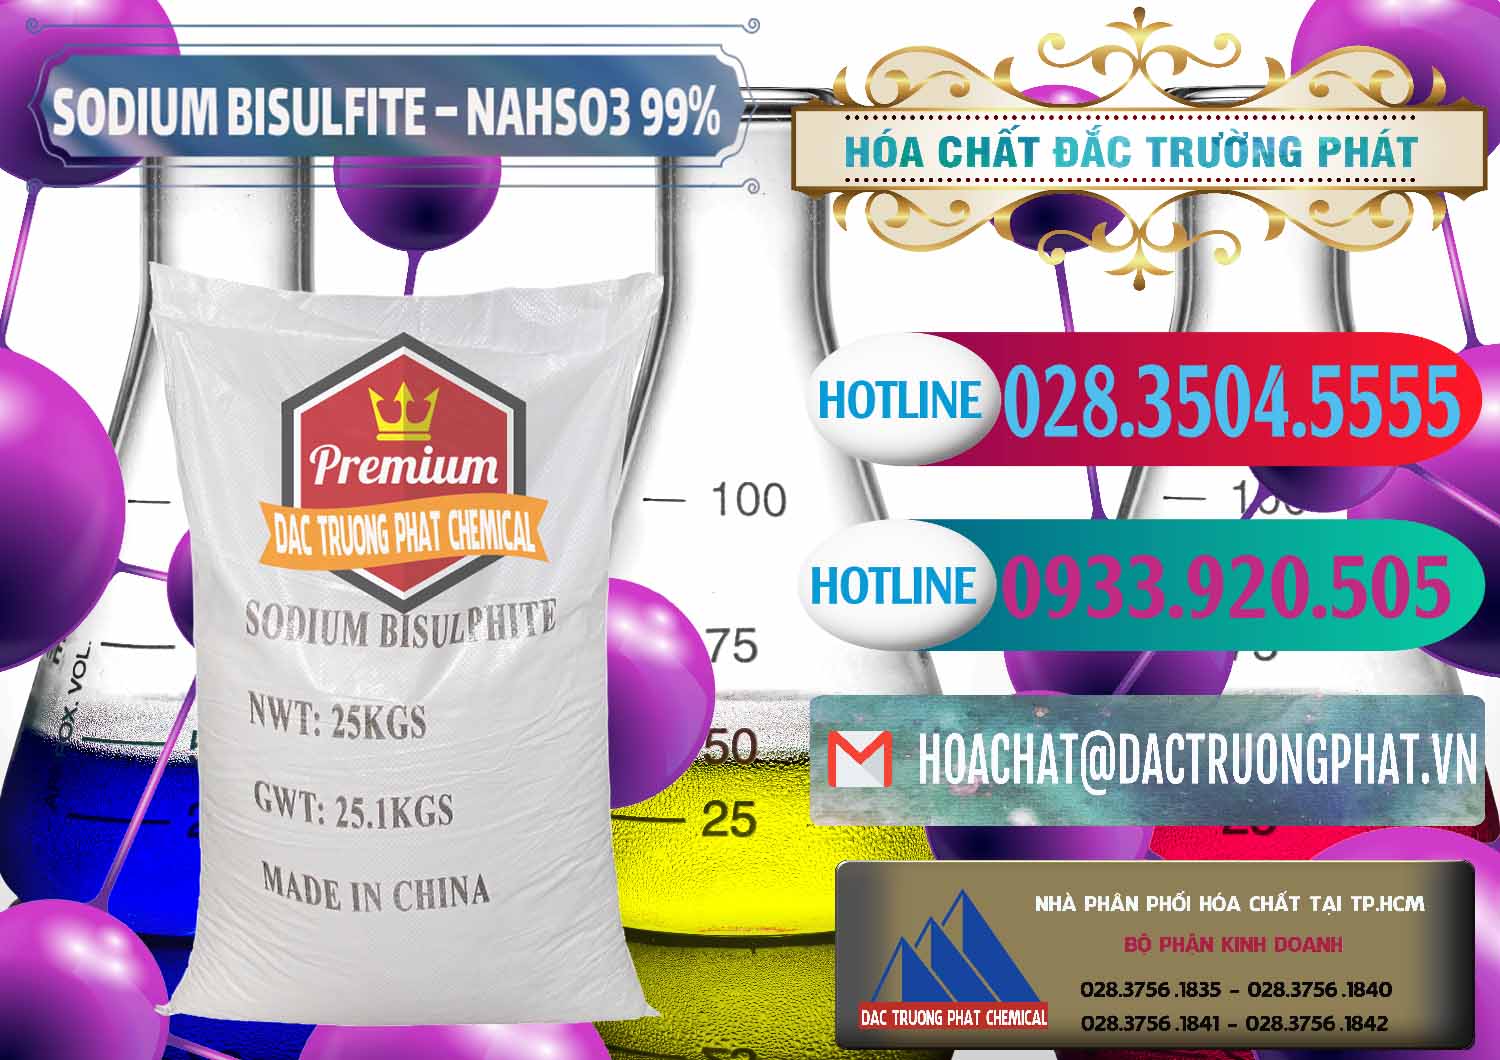 Nơi chuyên bán _ phân phối Sodium Bisulfite – NAHSO3 Trung Quốc China - 0140 - Đơn vị cung cấp và phân phối hóa chất tại TP.HCM - truongphat.vn